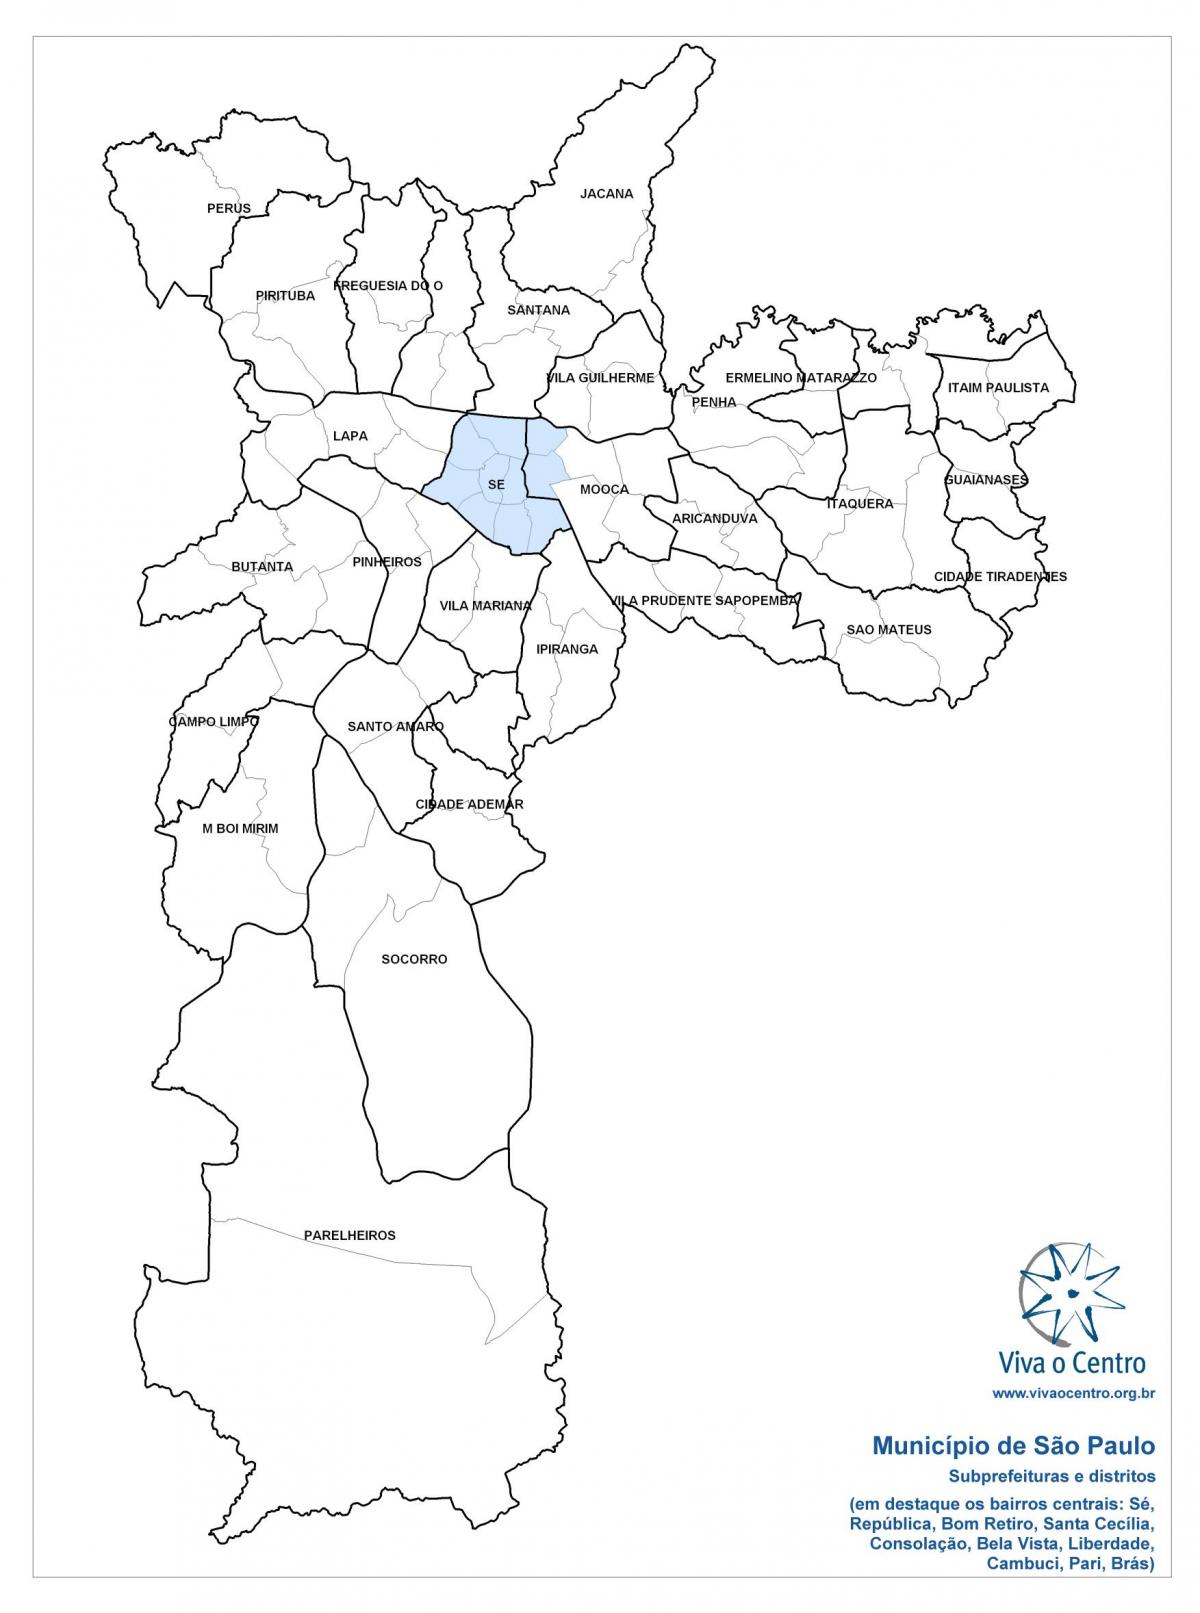 نقشه از منطقه مرکزی São Paulo